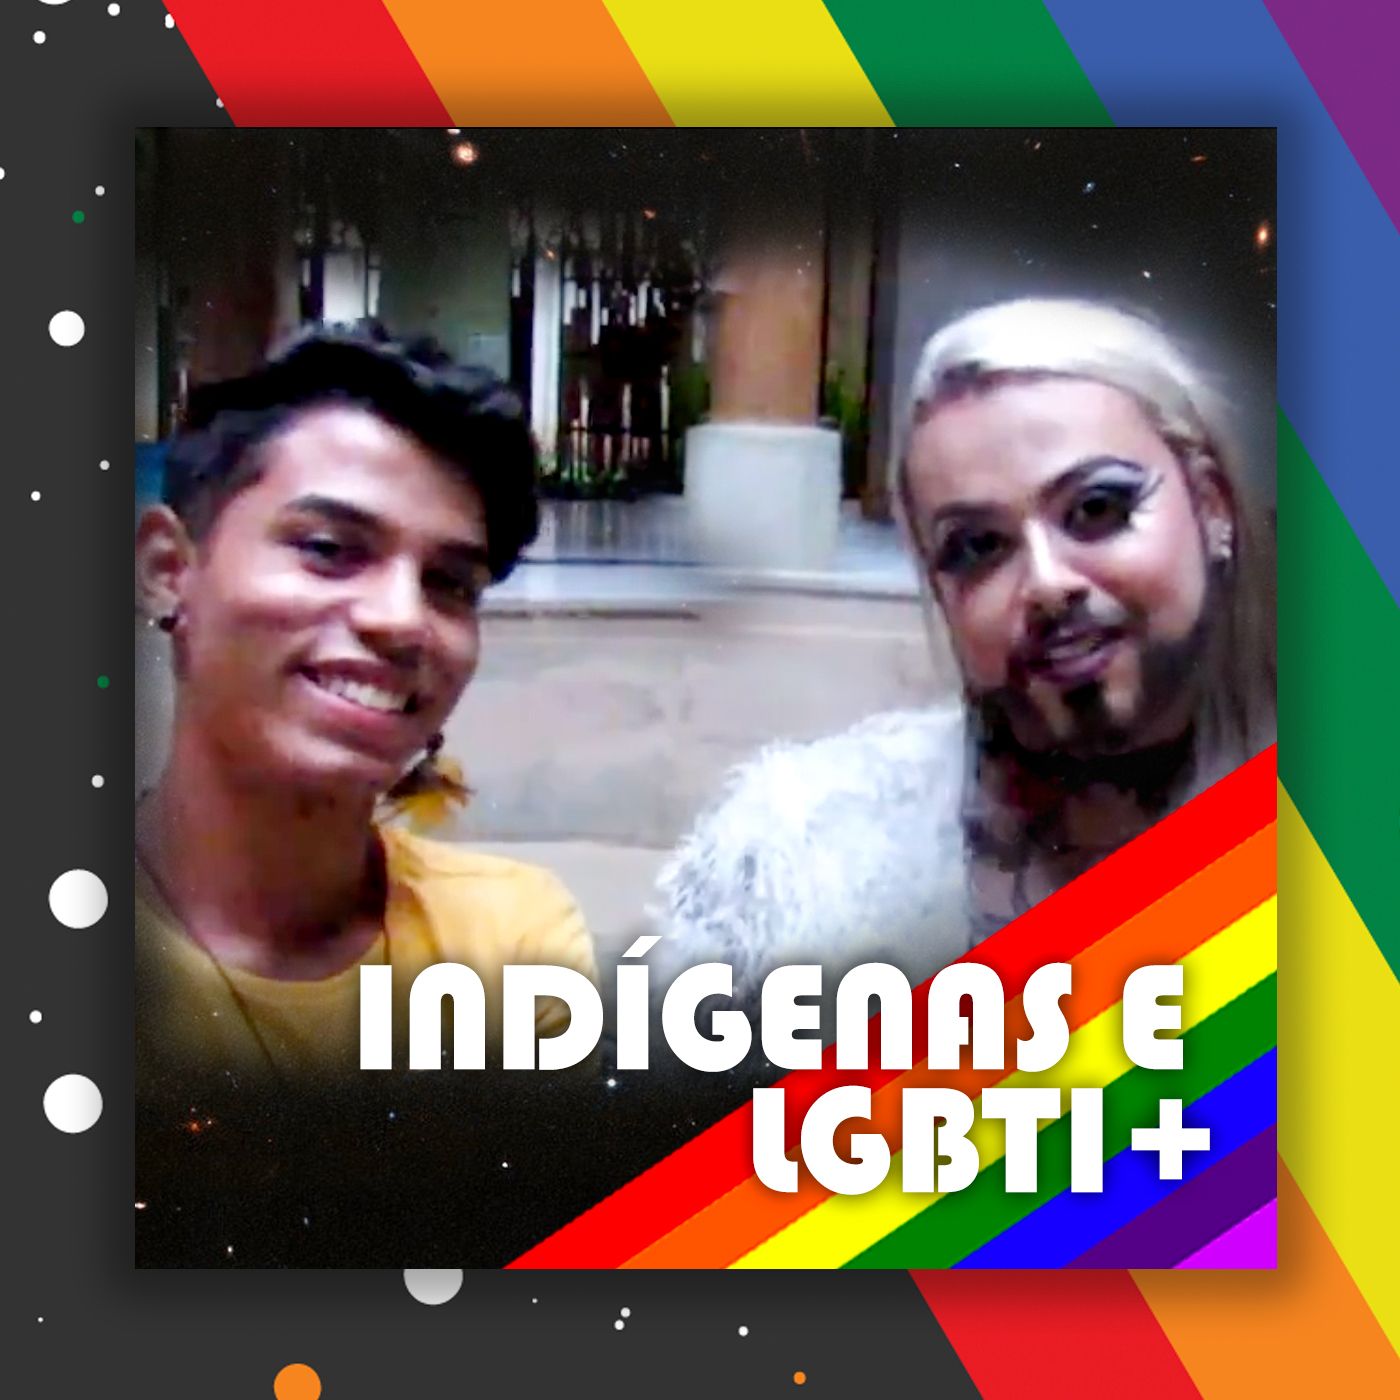 Indígenas e LGBTI+